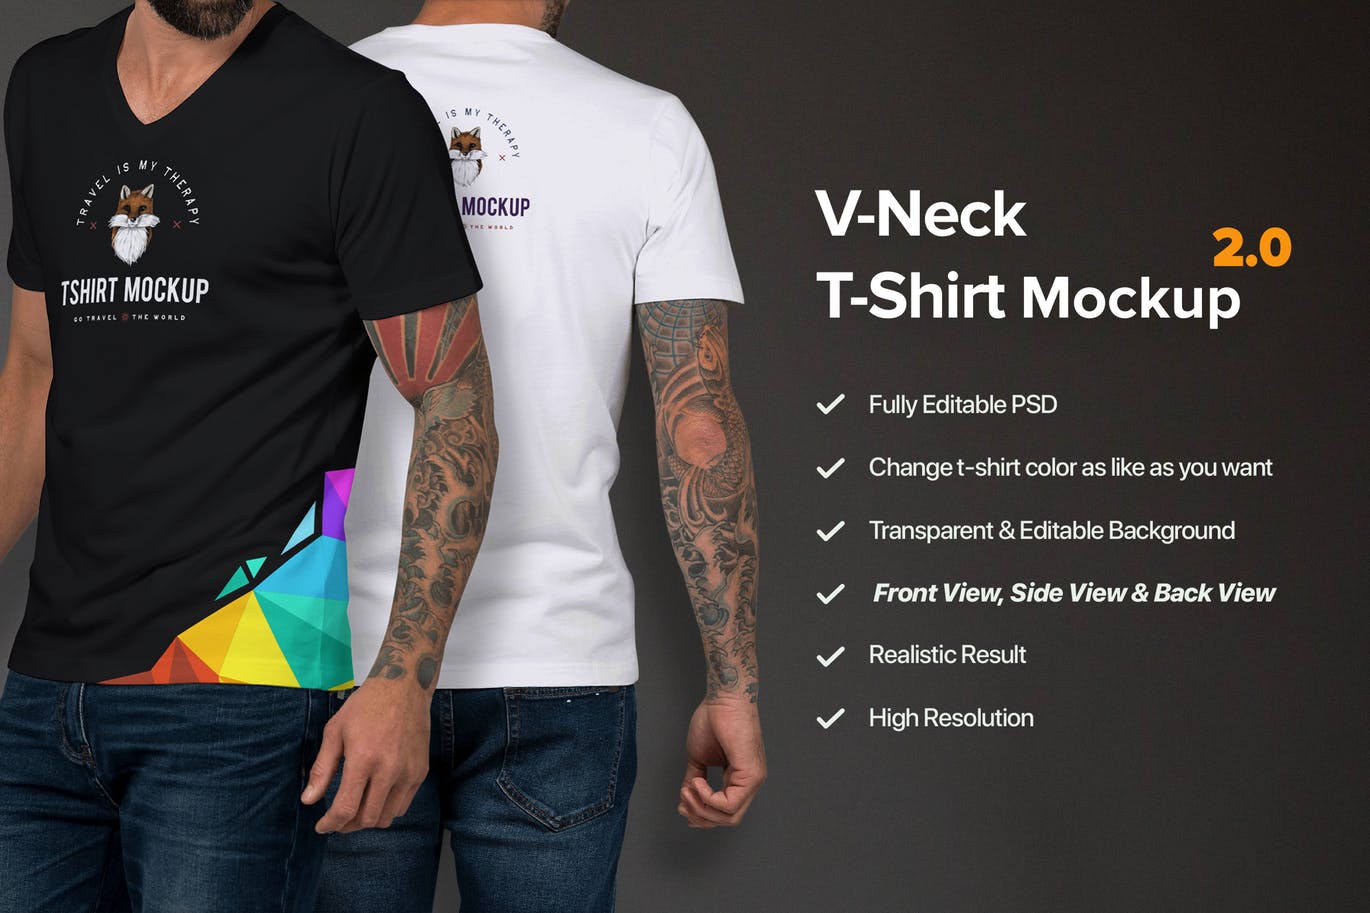 男士V领T恤设计模特上身服装效果图样机模板 T-shirt Mockup插图